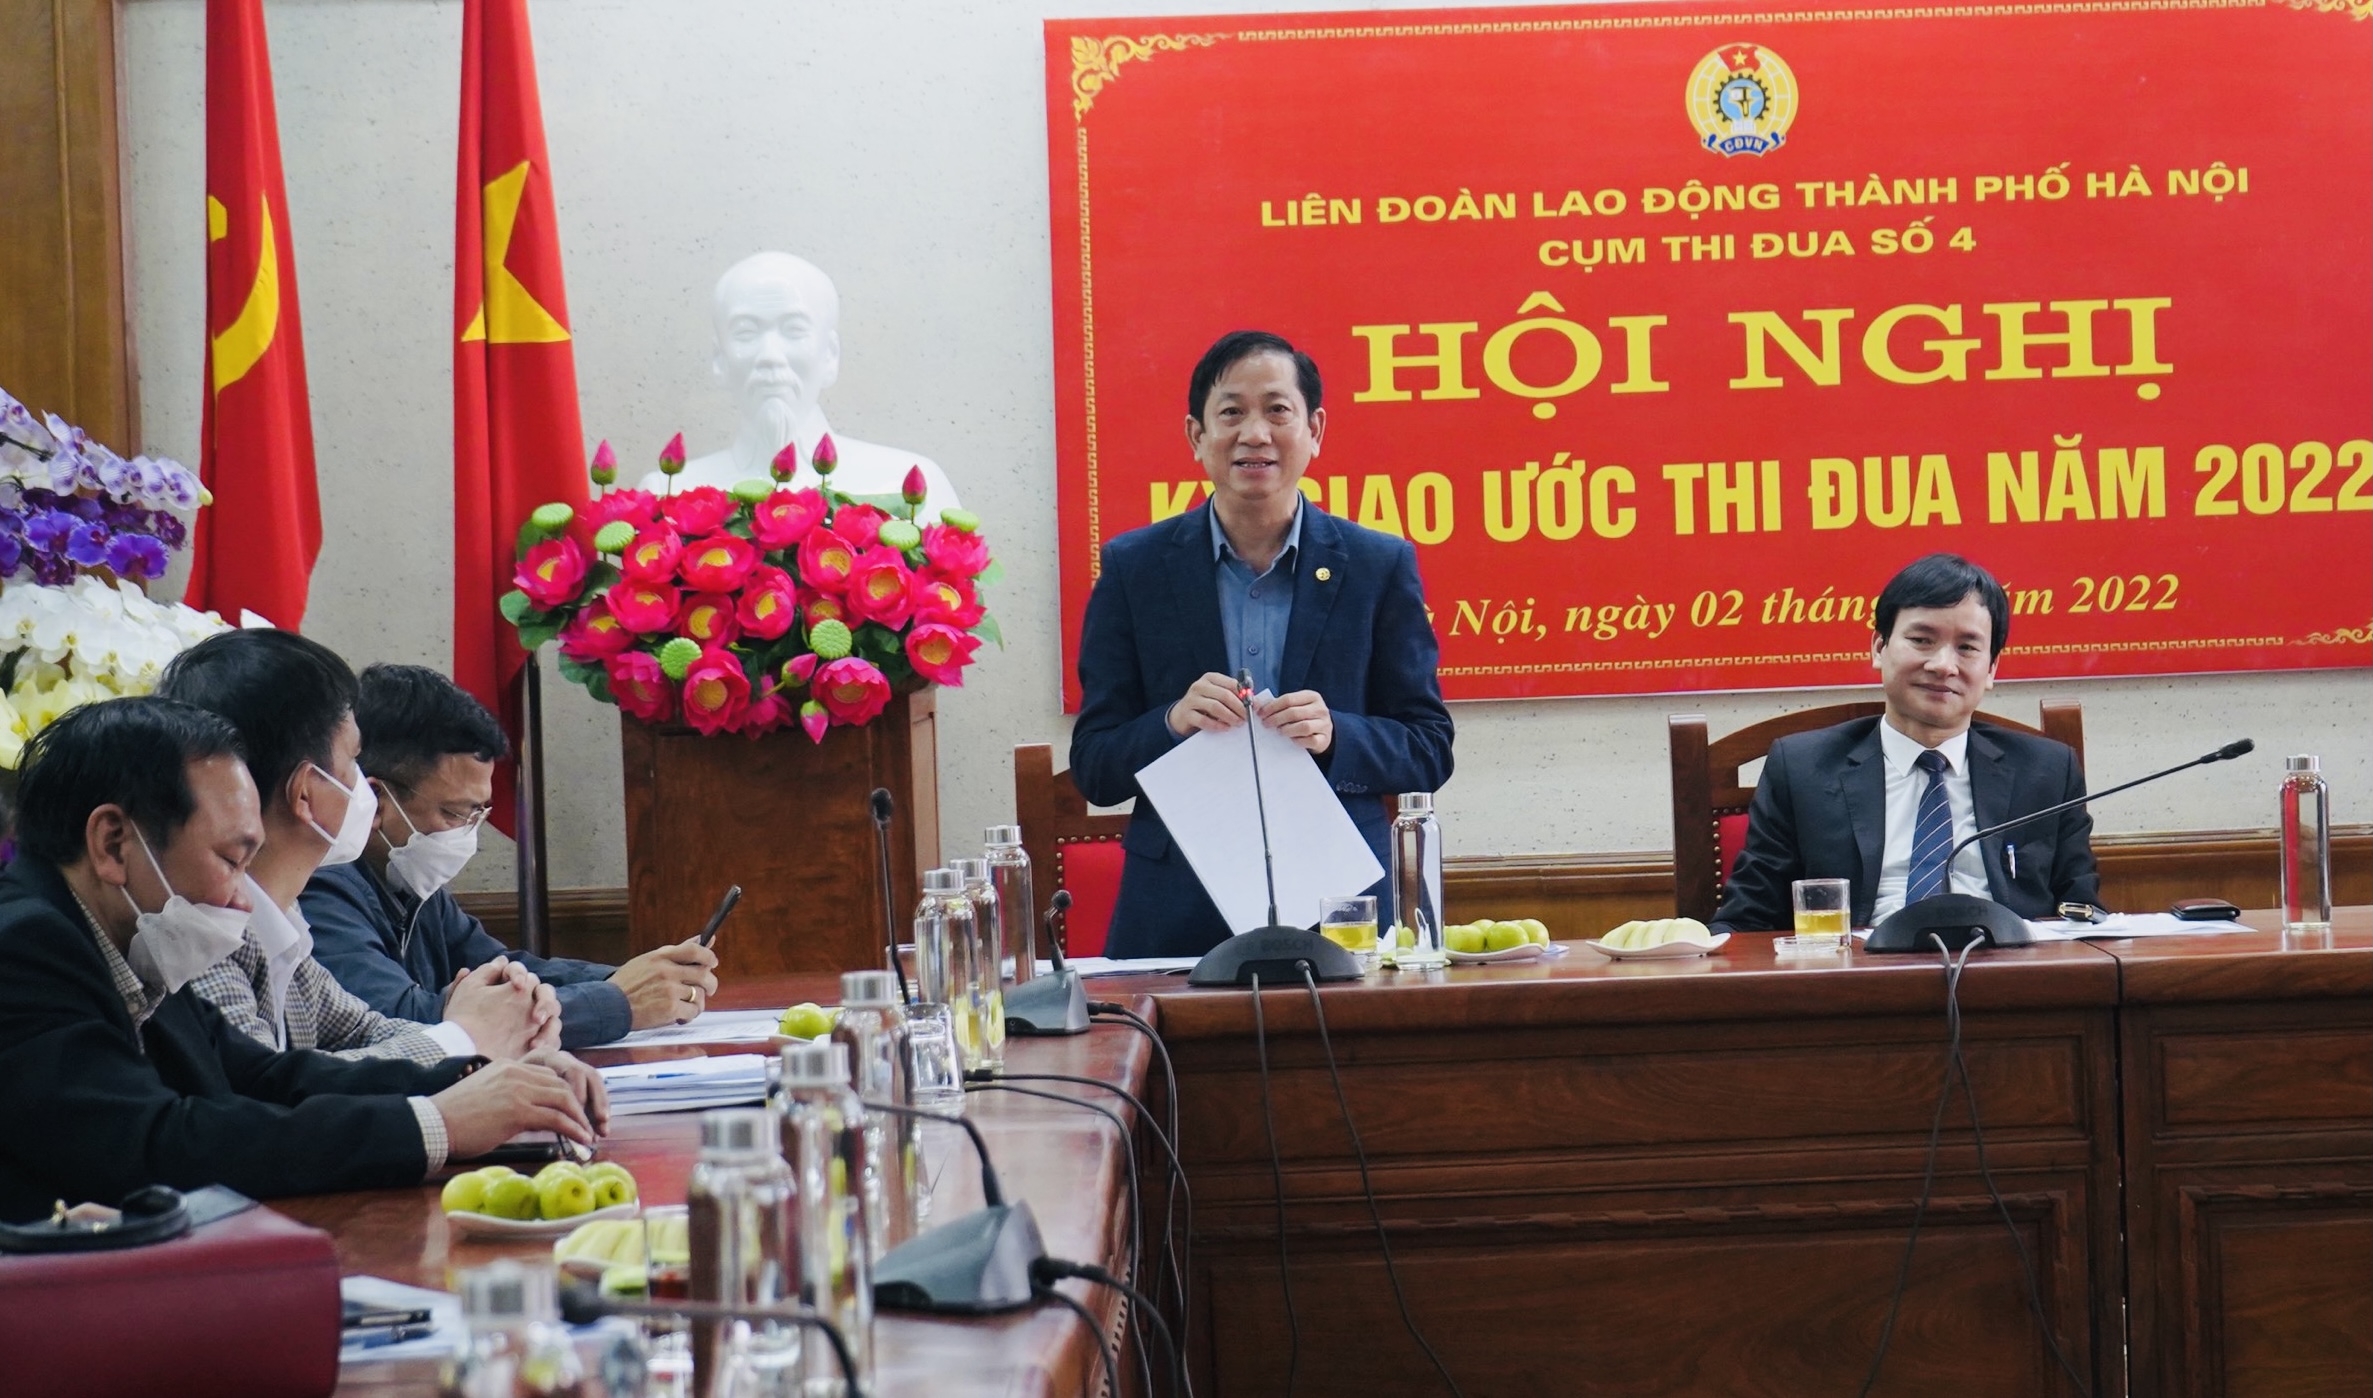 Cụm thi đua số 4 LĐLĐ thành phố Hà Nội ký giao ước thi đua năm 2022